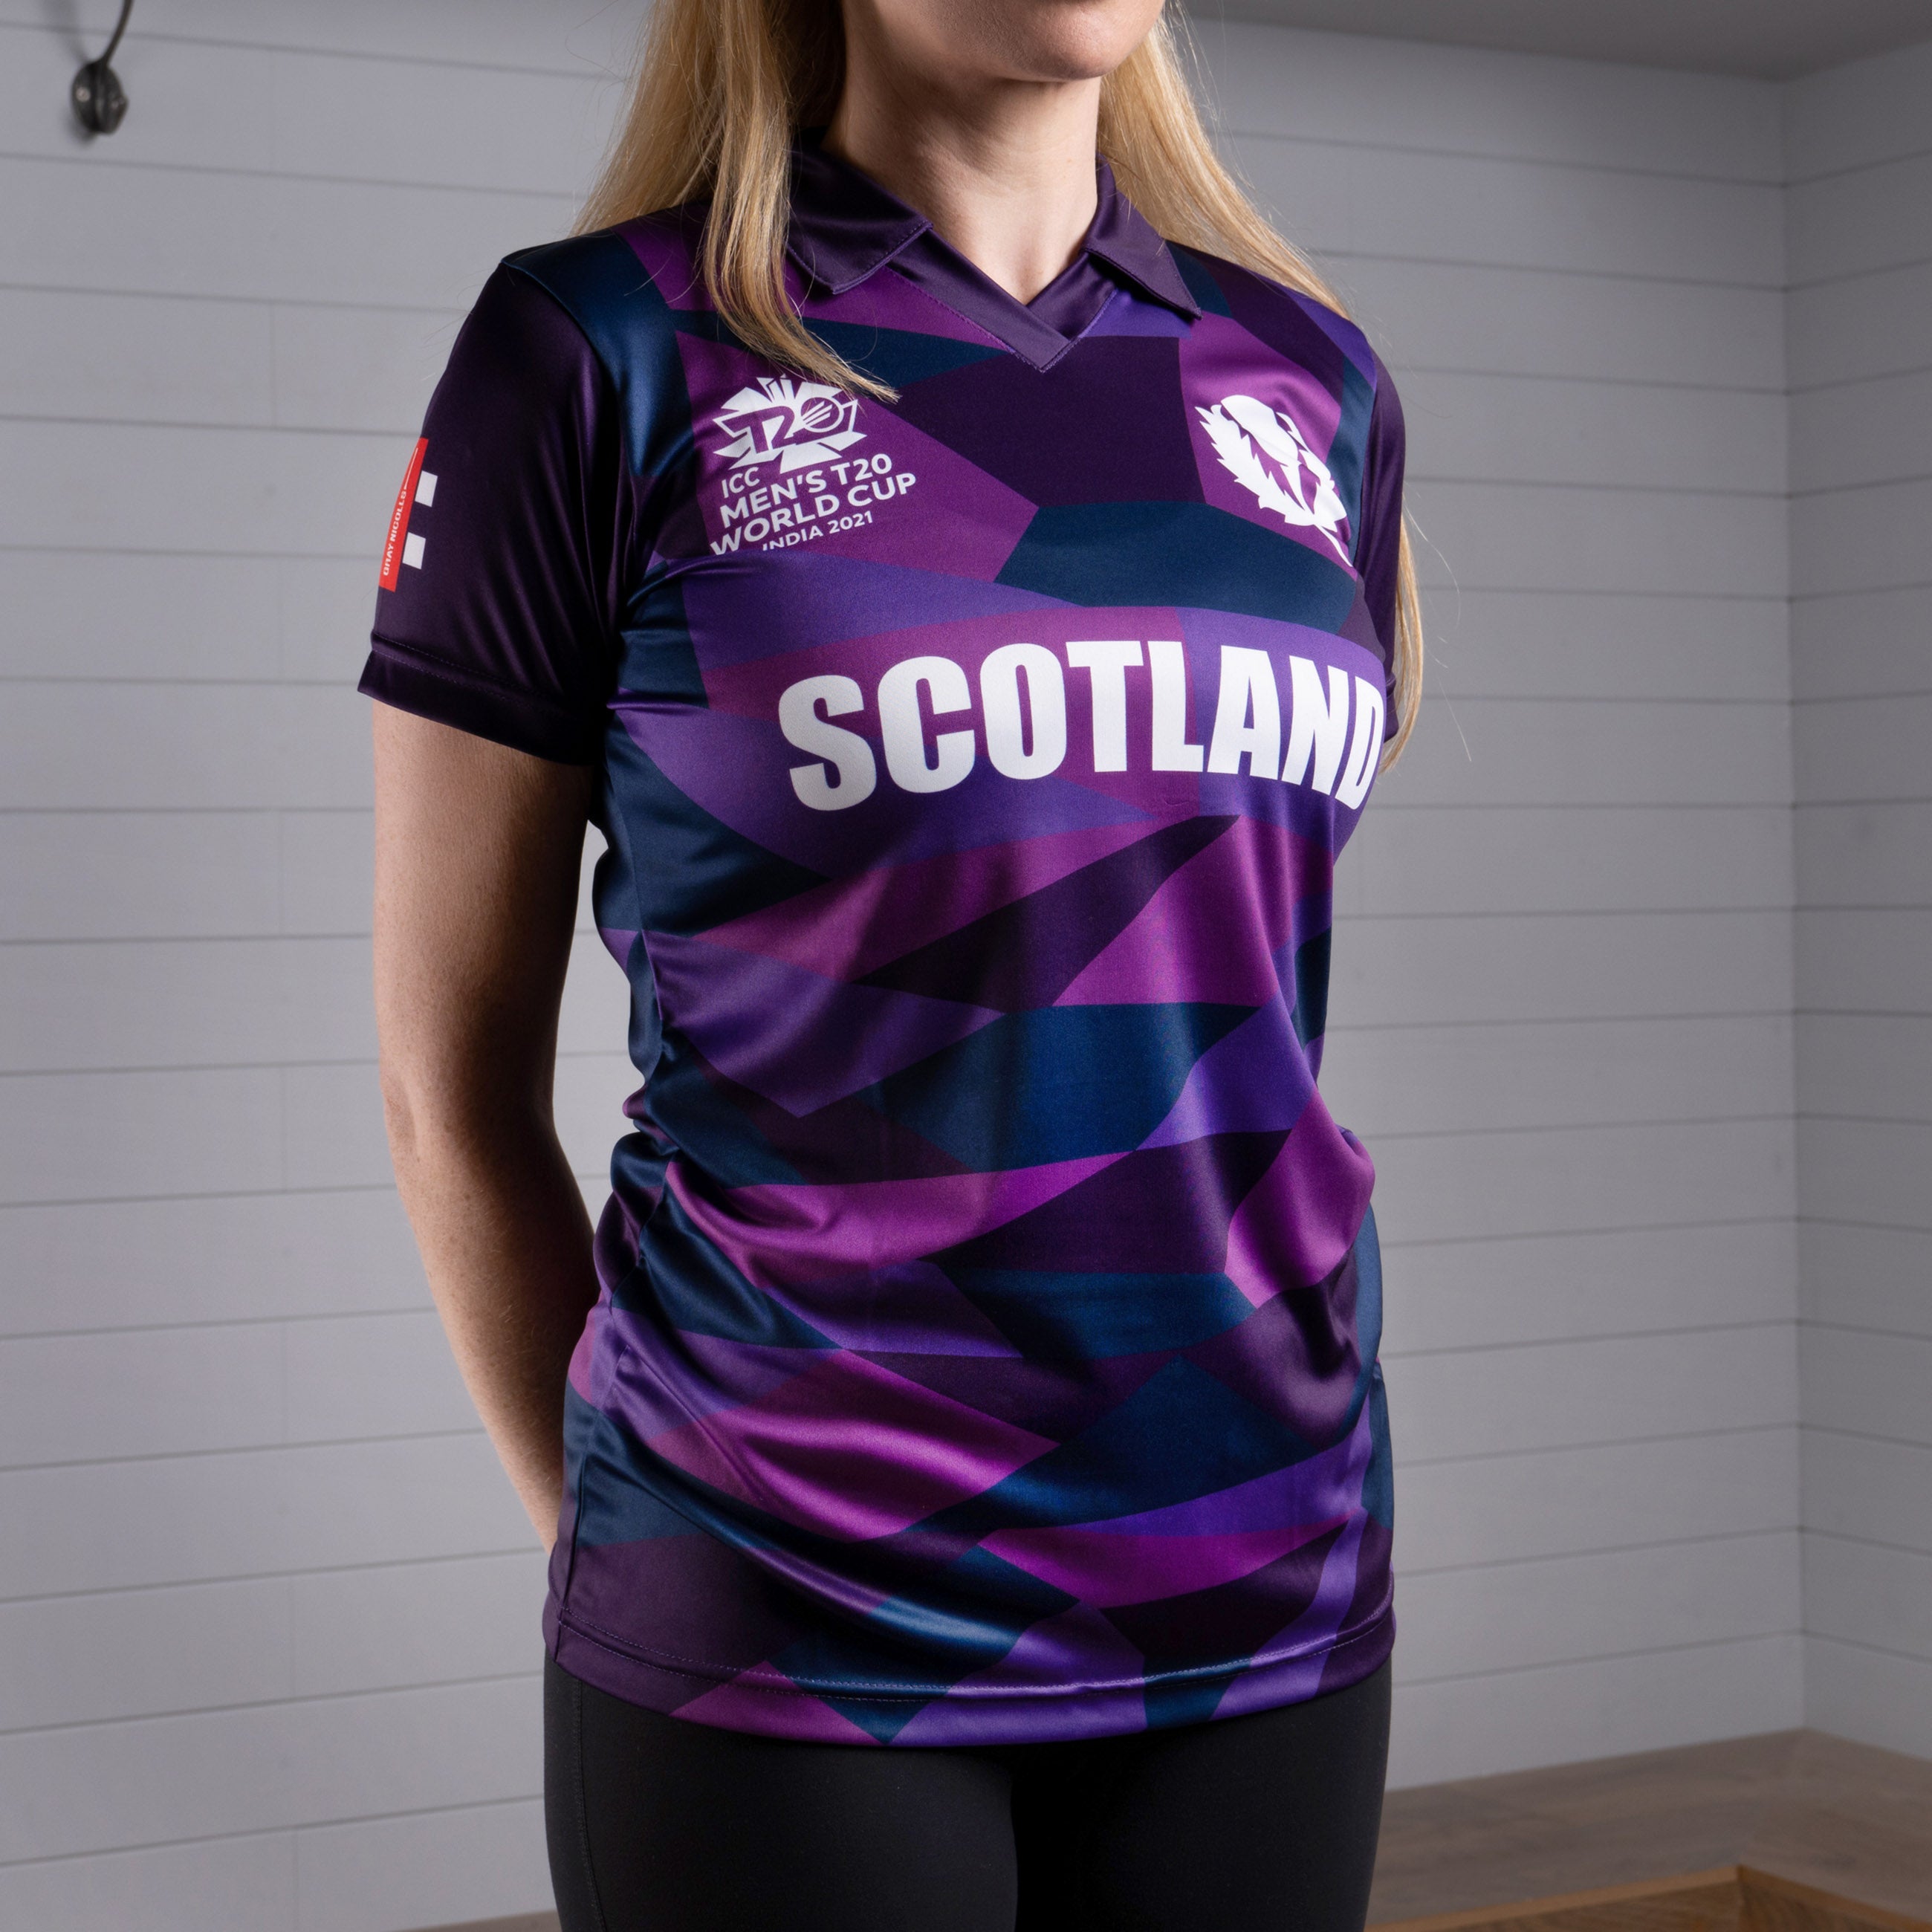 Cricket Scotland T20 World Cup Short Sleeve Shirt - Women's